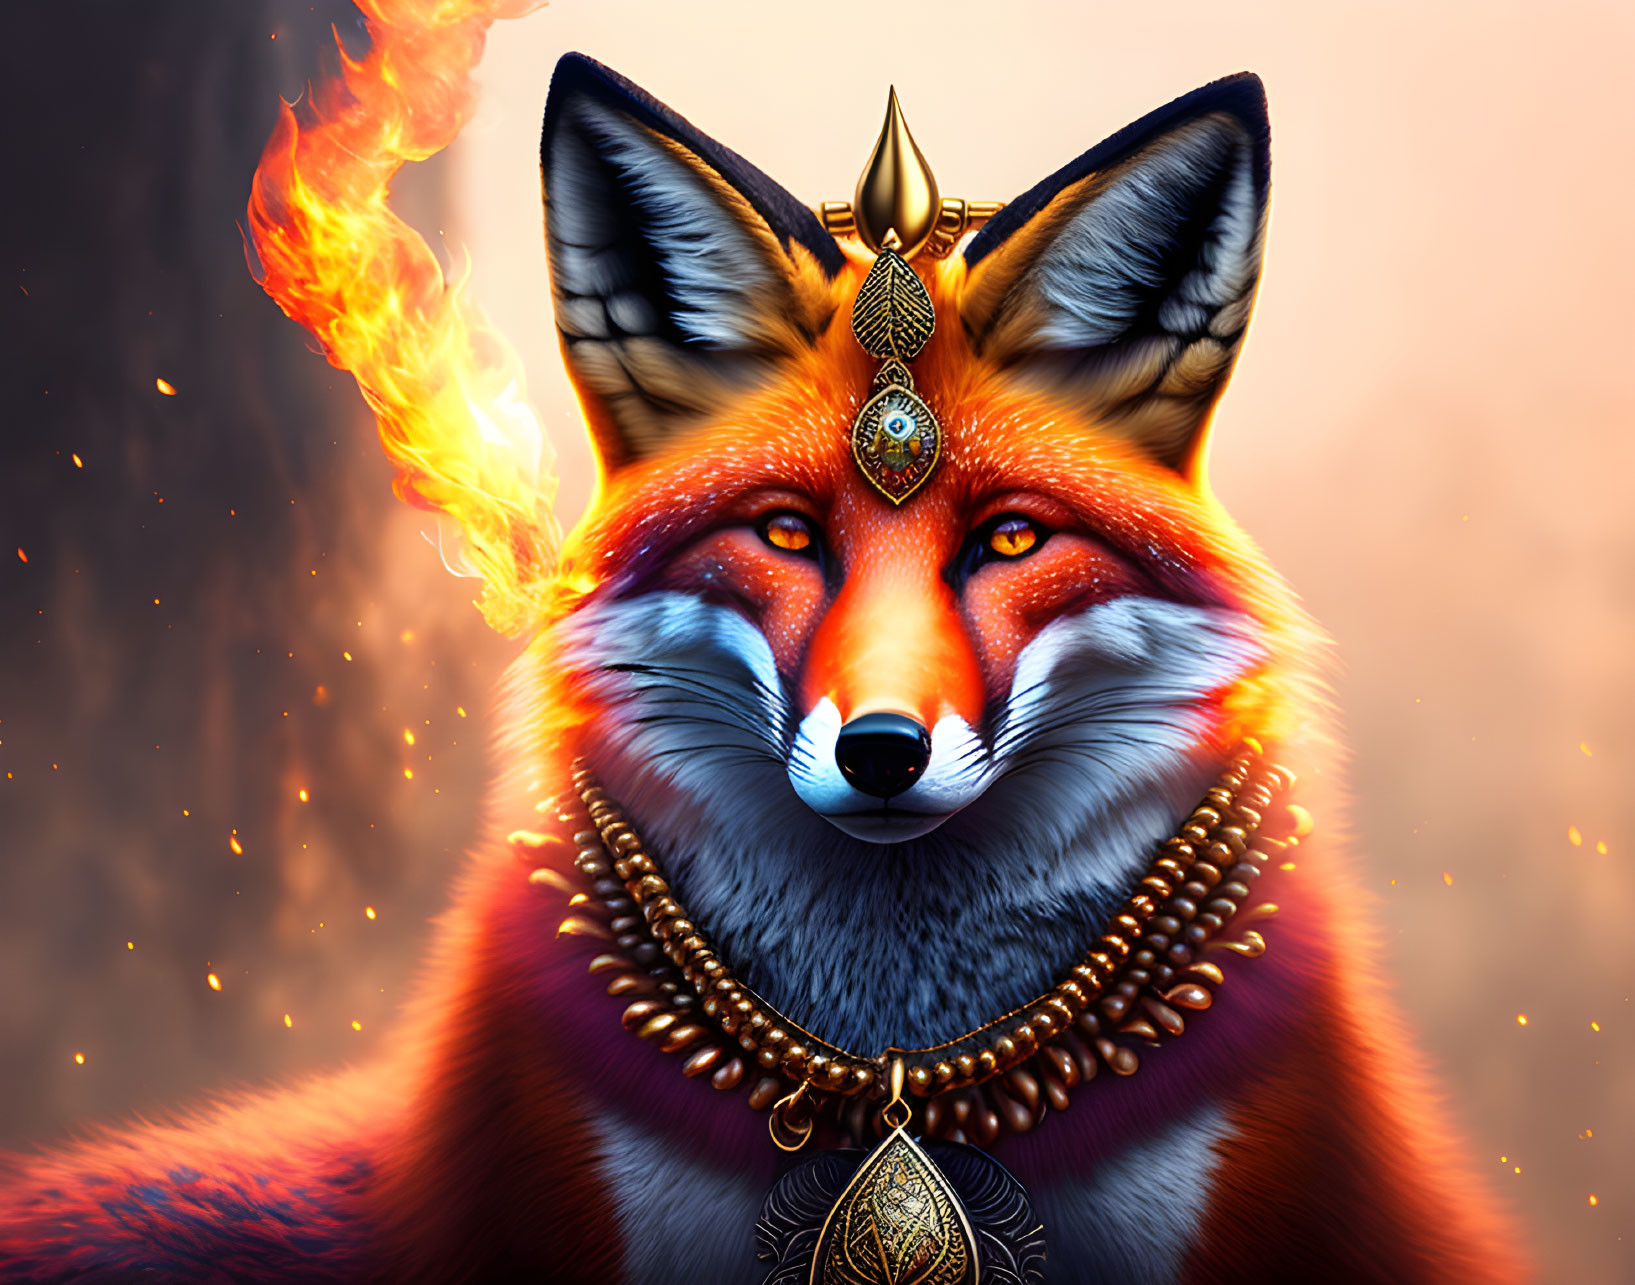 Fox with fire jewelry